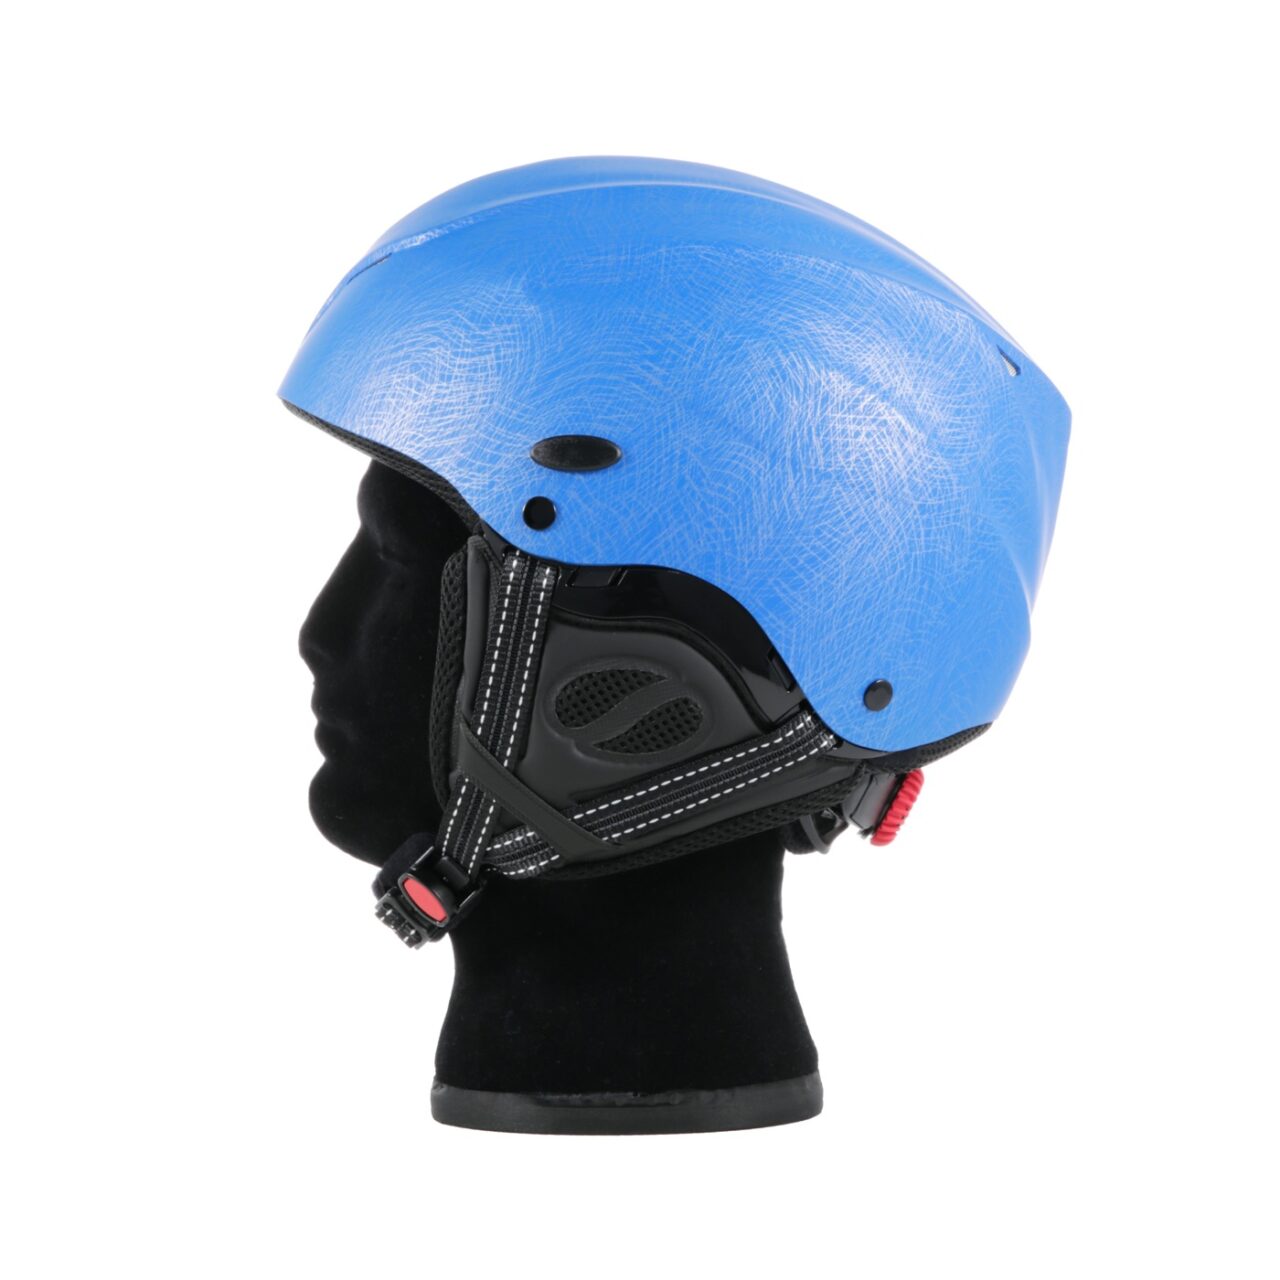 finansiere Økonomi deltage Icaro2000 Nerv 2.0 Helmet | Torrey Pines Gliderport